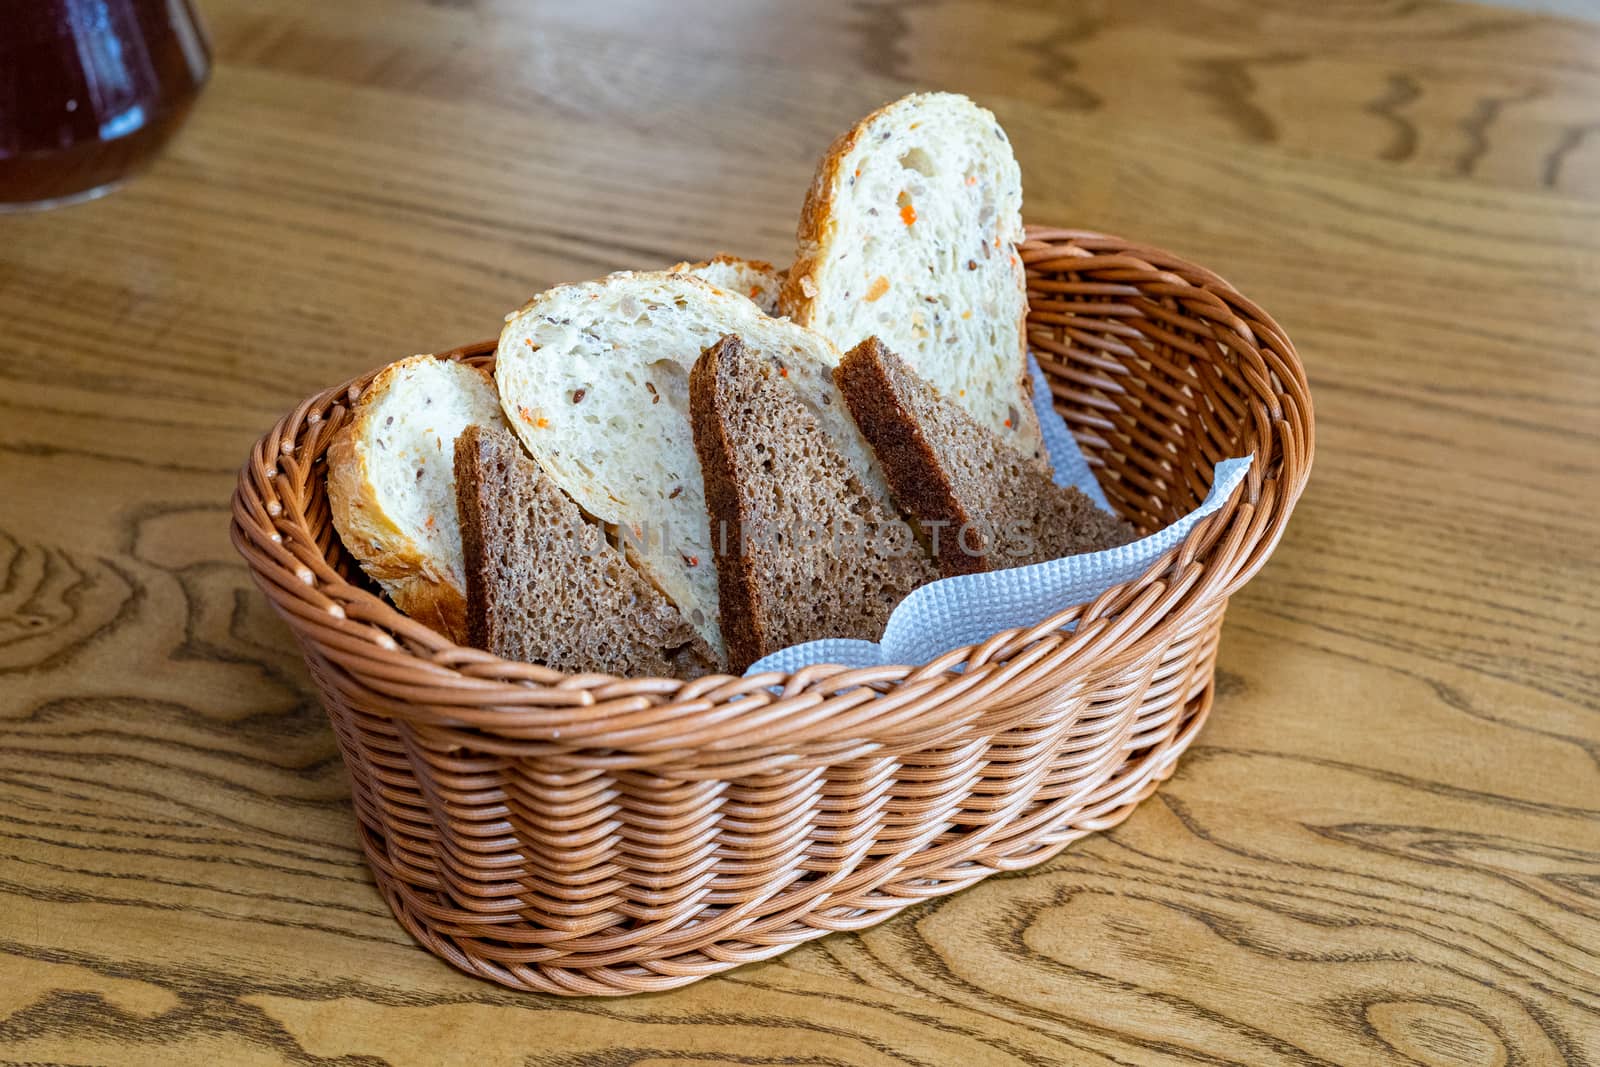 Black and white bread in a basket by Serhii_Voroshchuk